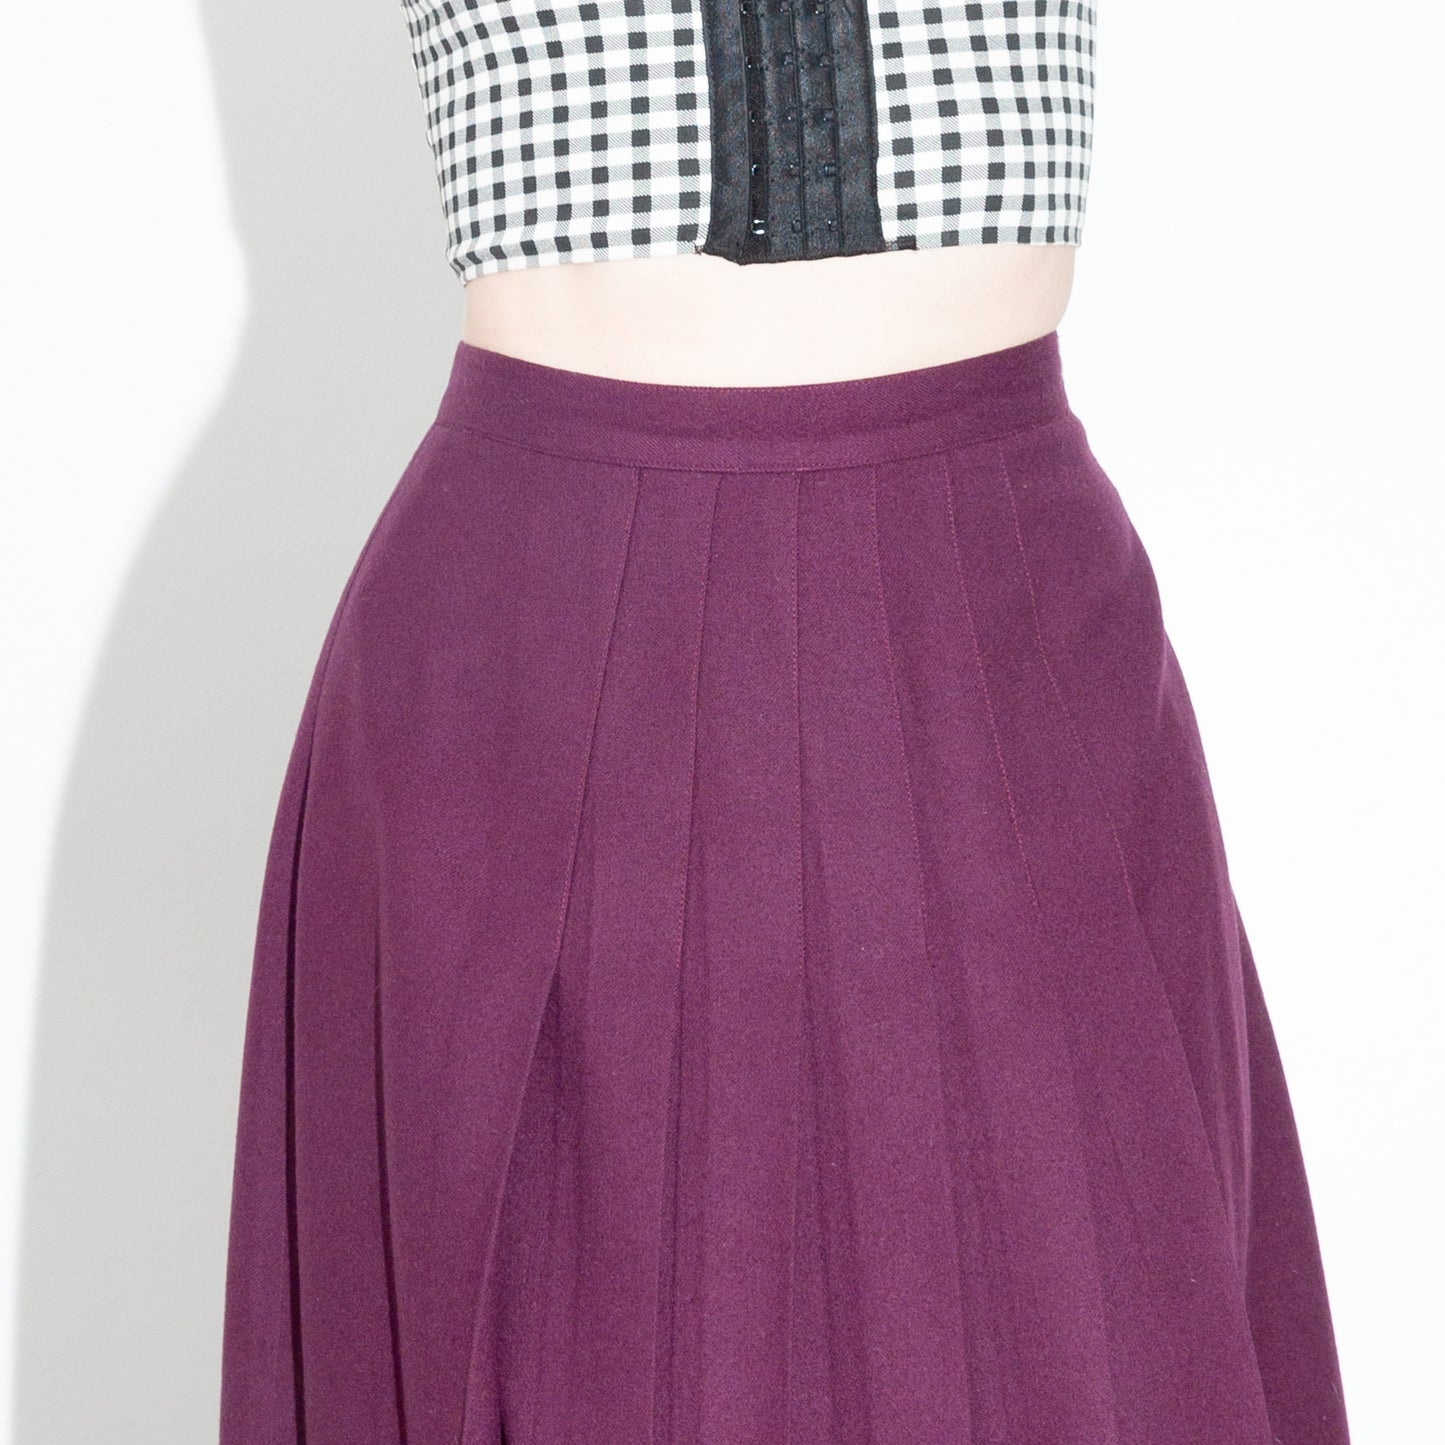 Vintage 80s Purple Pleated Skirt